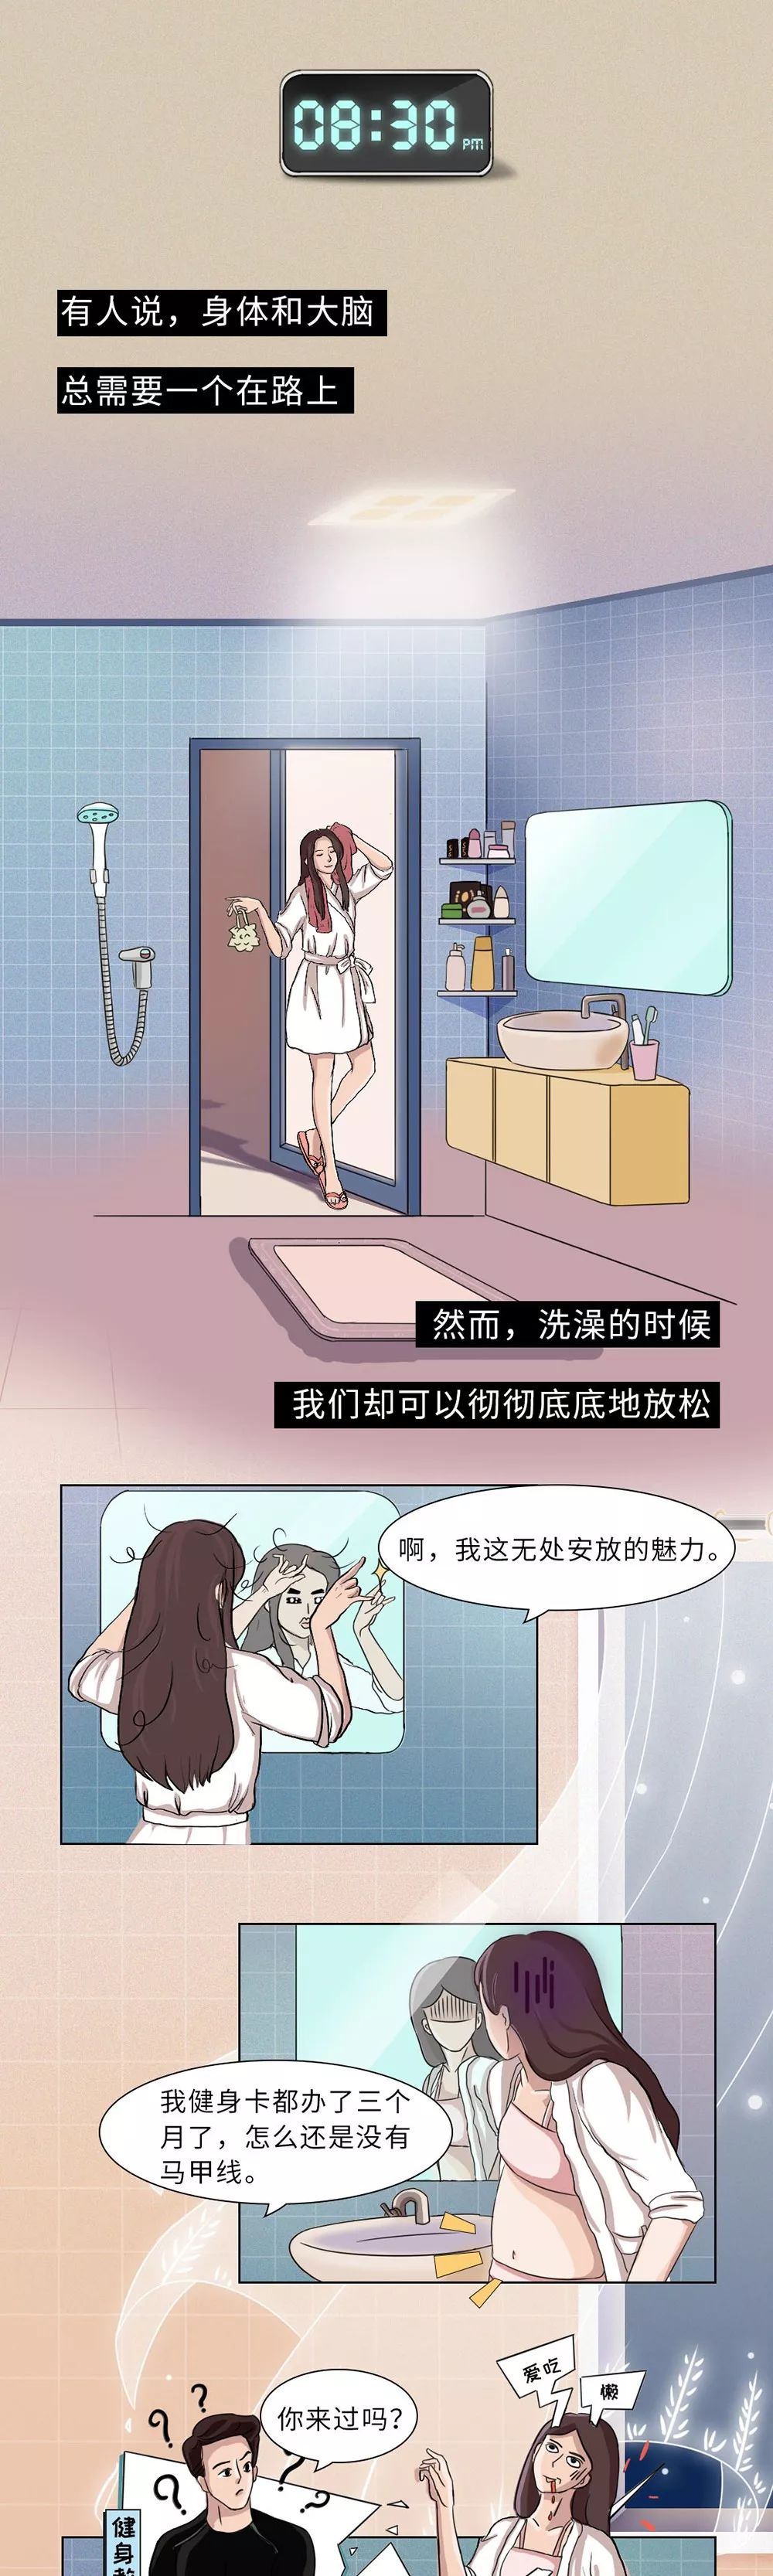 《当代女子洗澡过程全纪实》